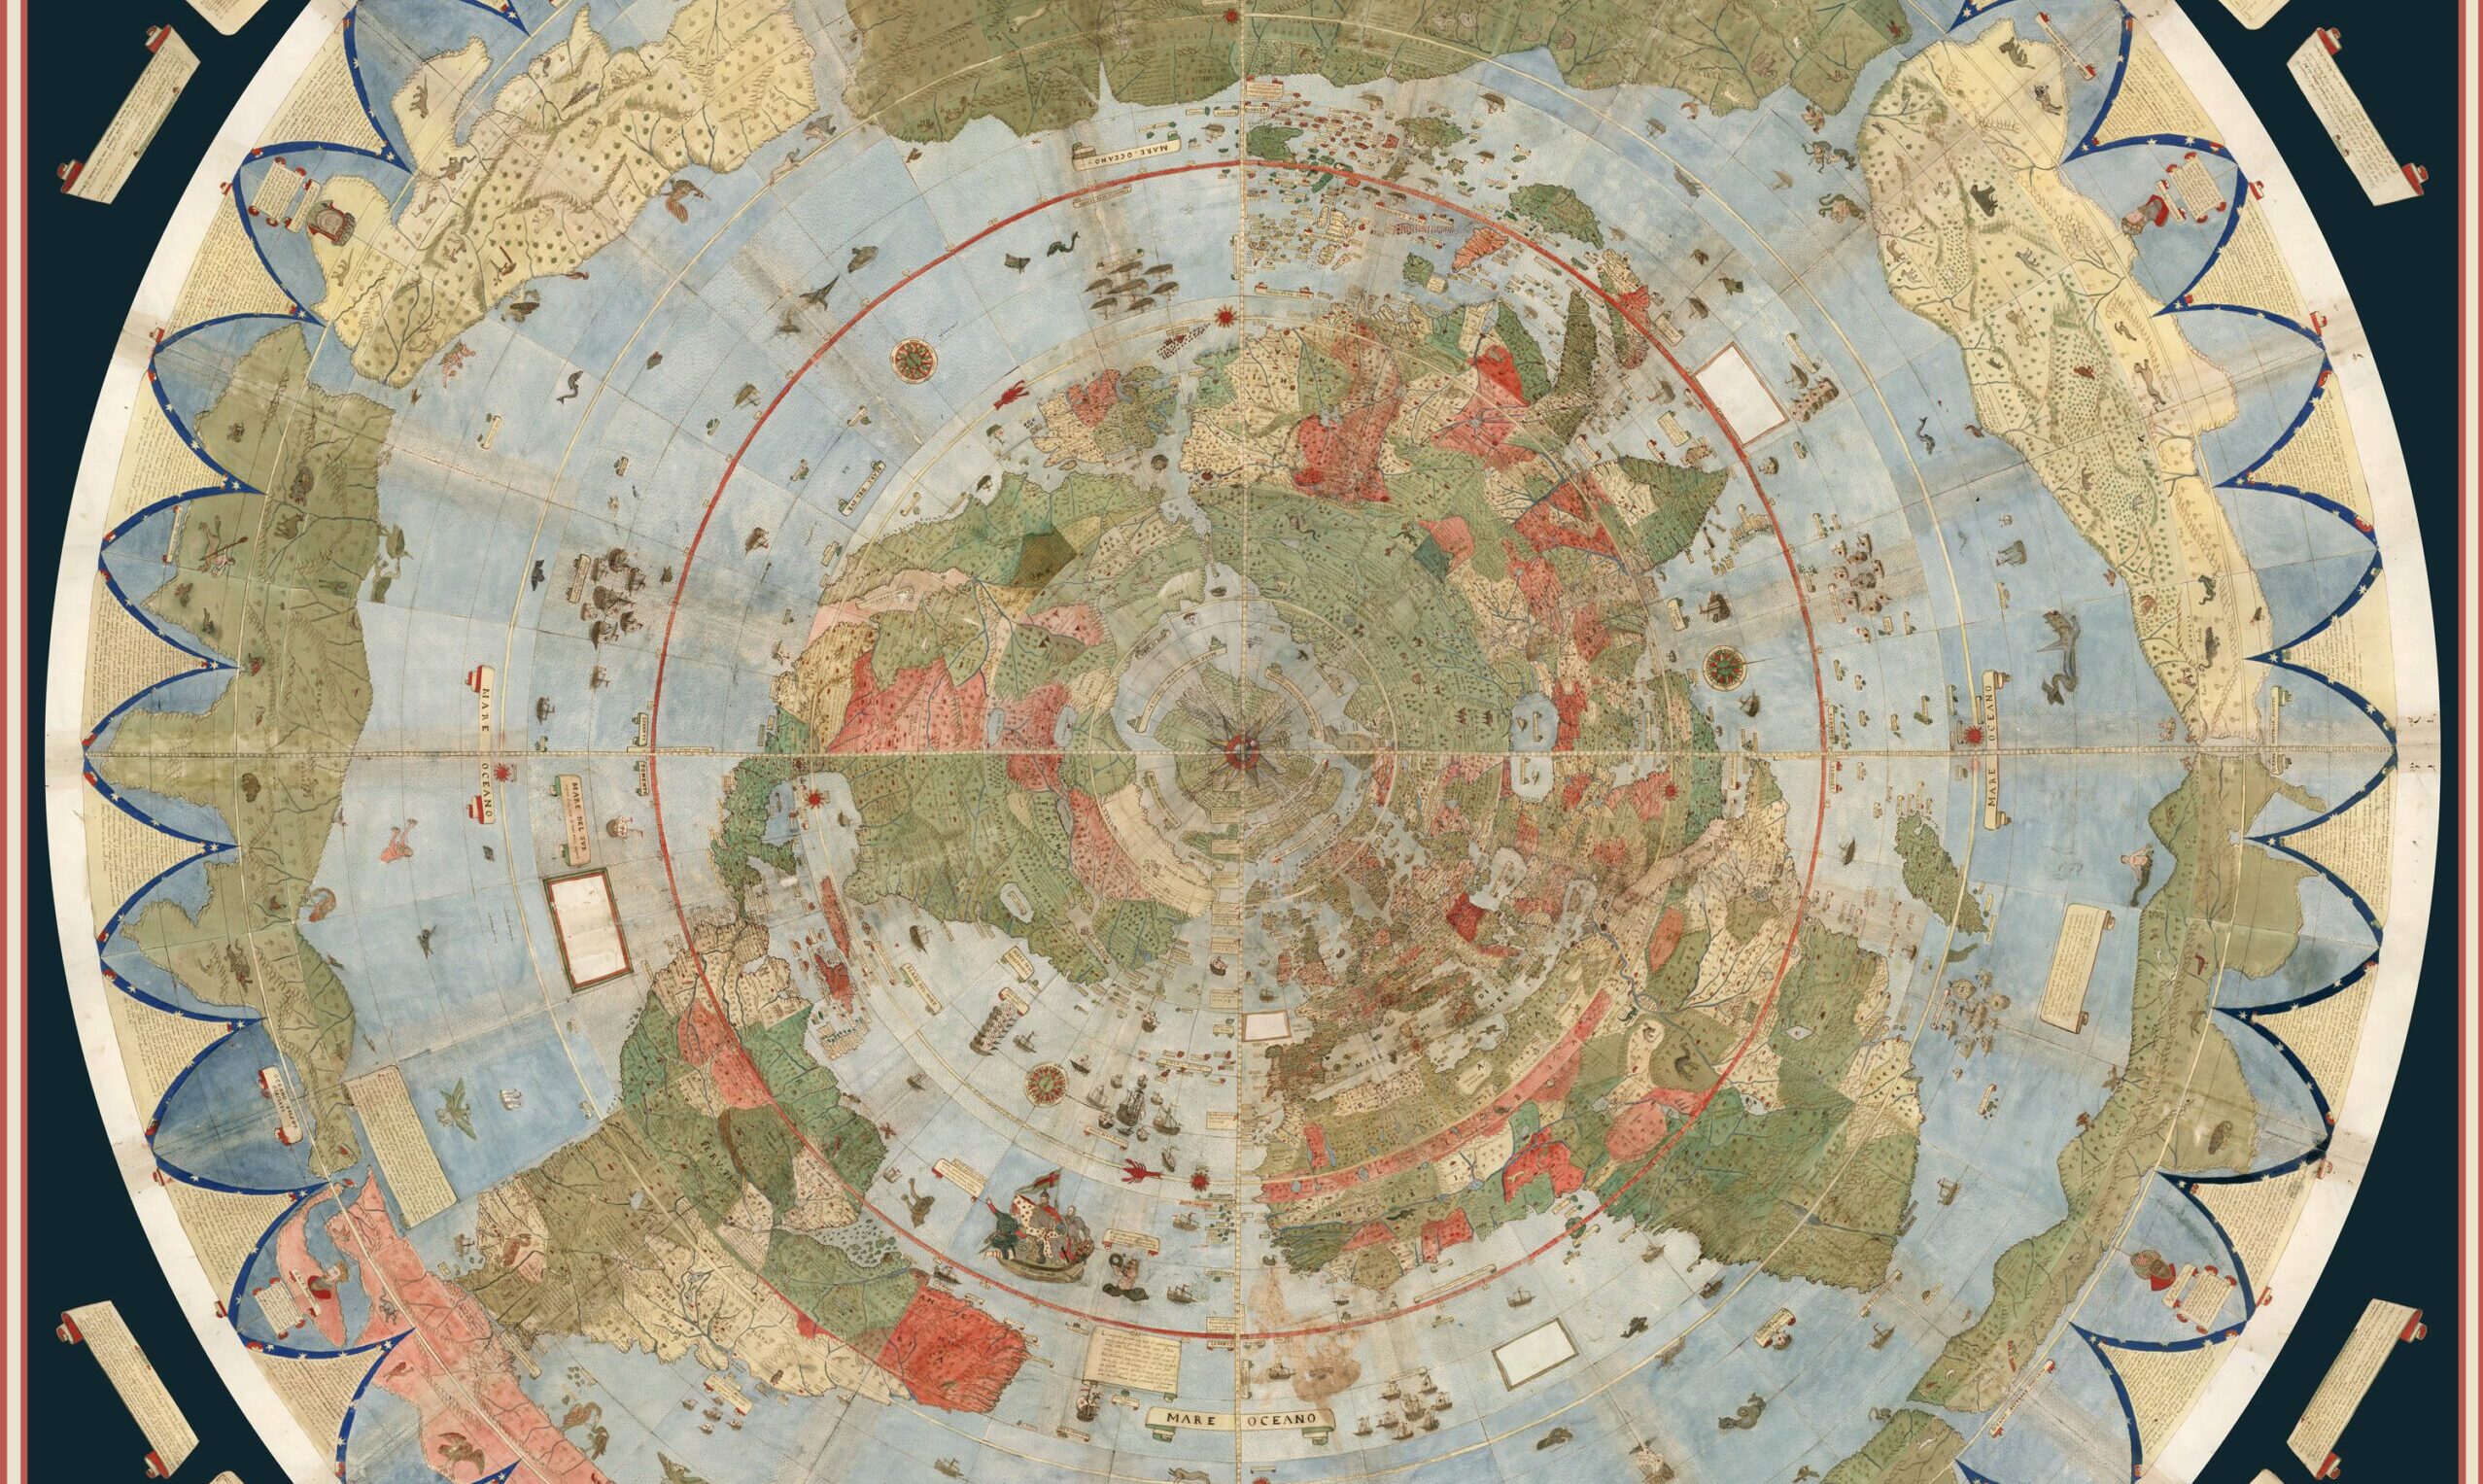 Mapa de Urbano Monti (1587).